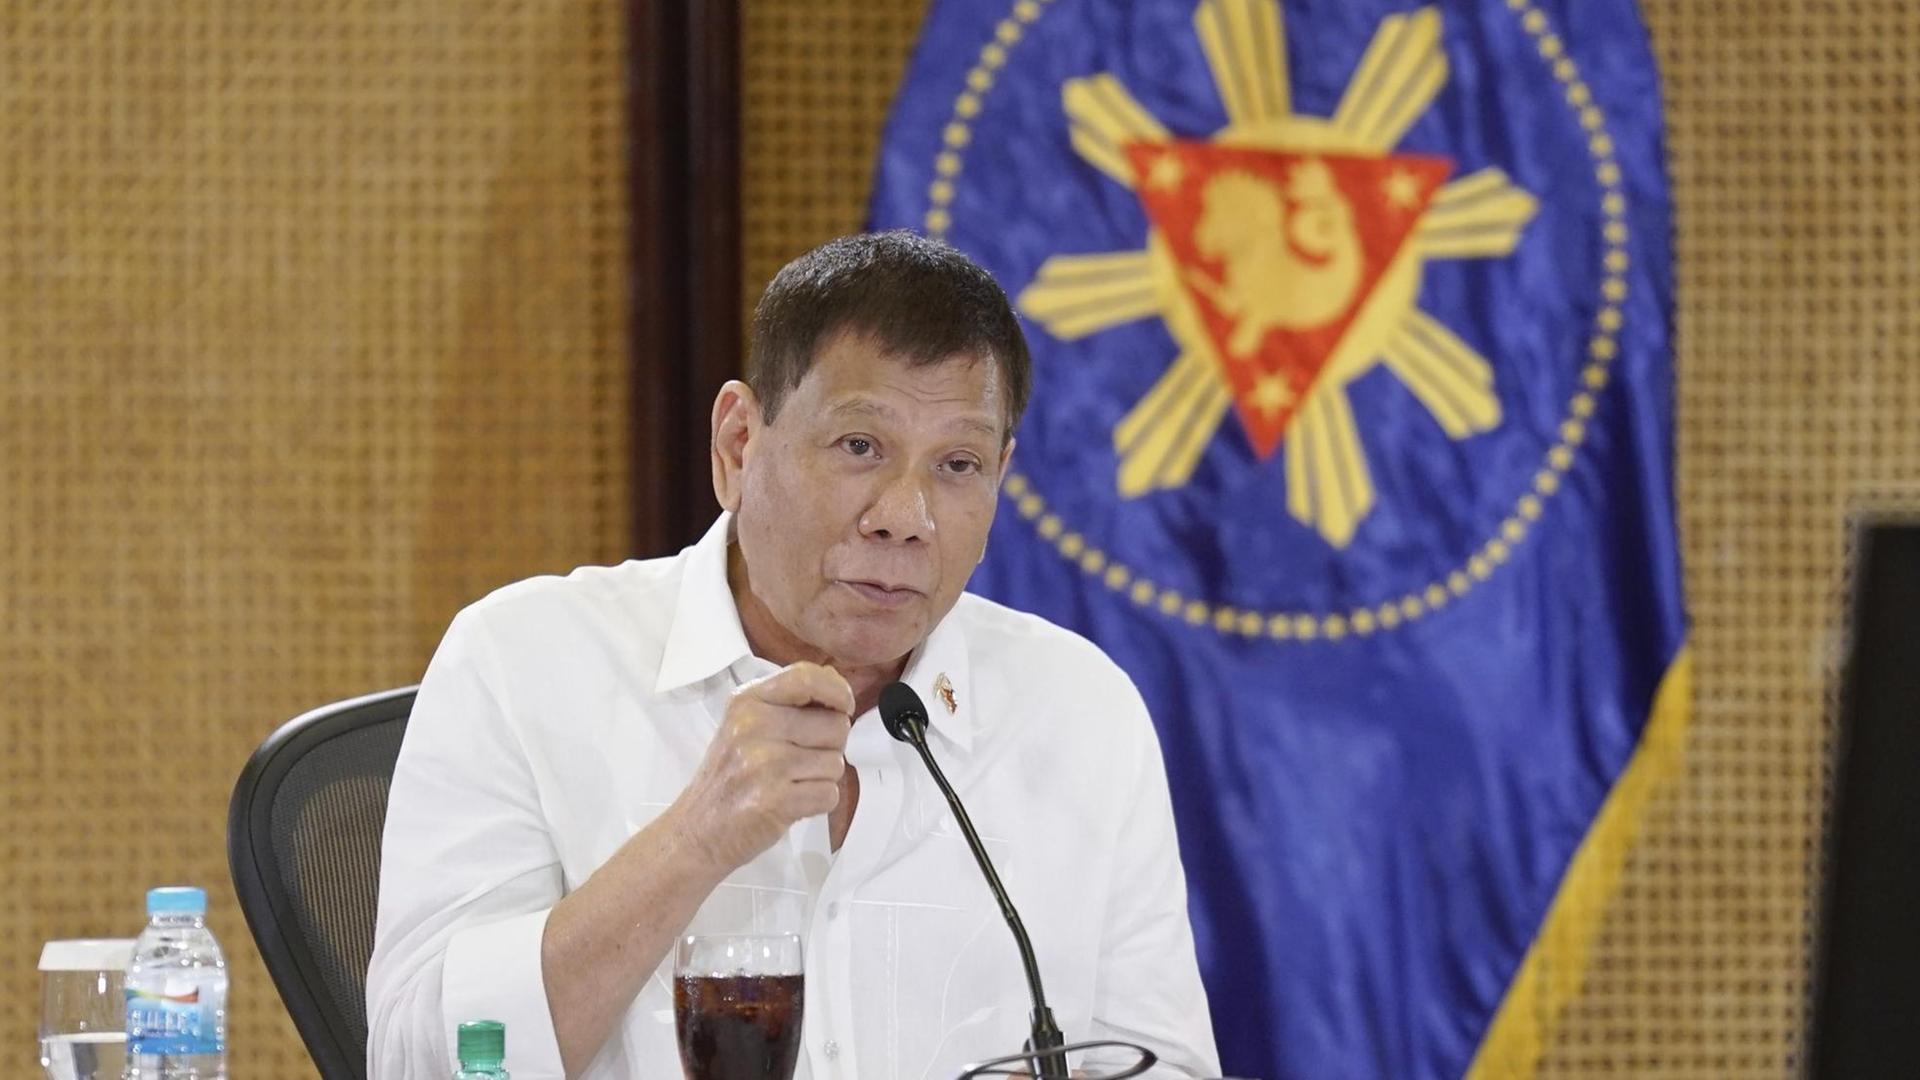 Staatschef Rodrigo Duterte bei einem Treffen mit der philippinischen Infektionschutz-Agentur im Präsidentenpalast in Manila, vor sich ein Mikro und ein Getränk